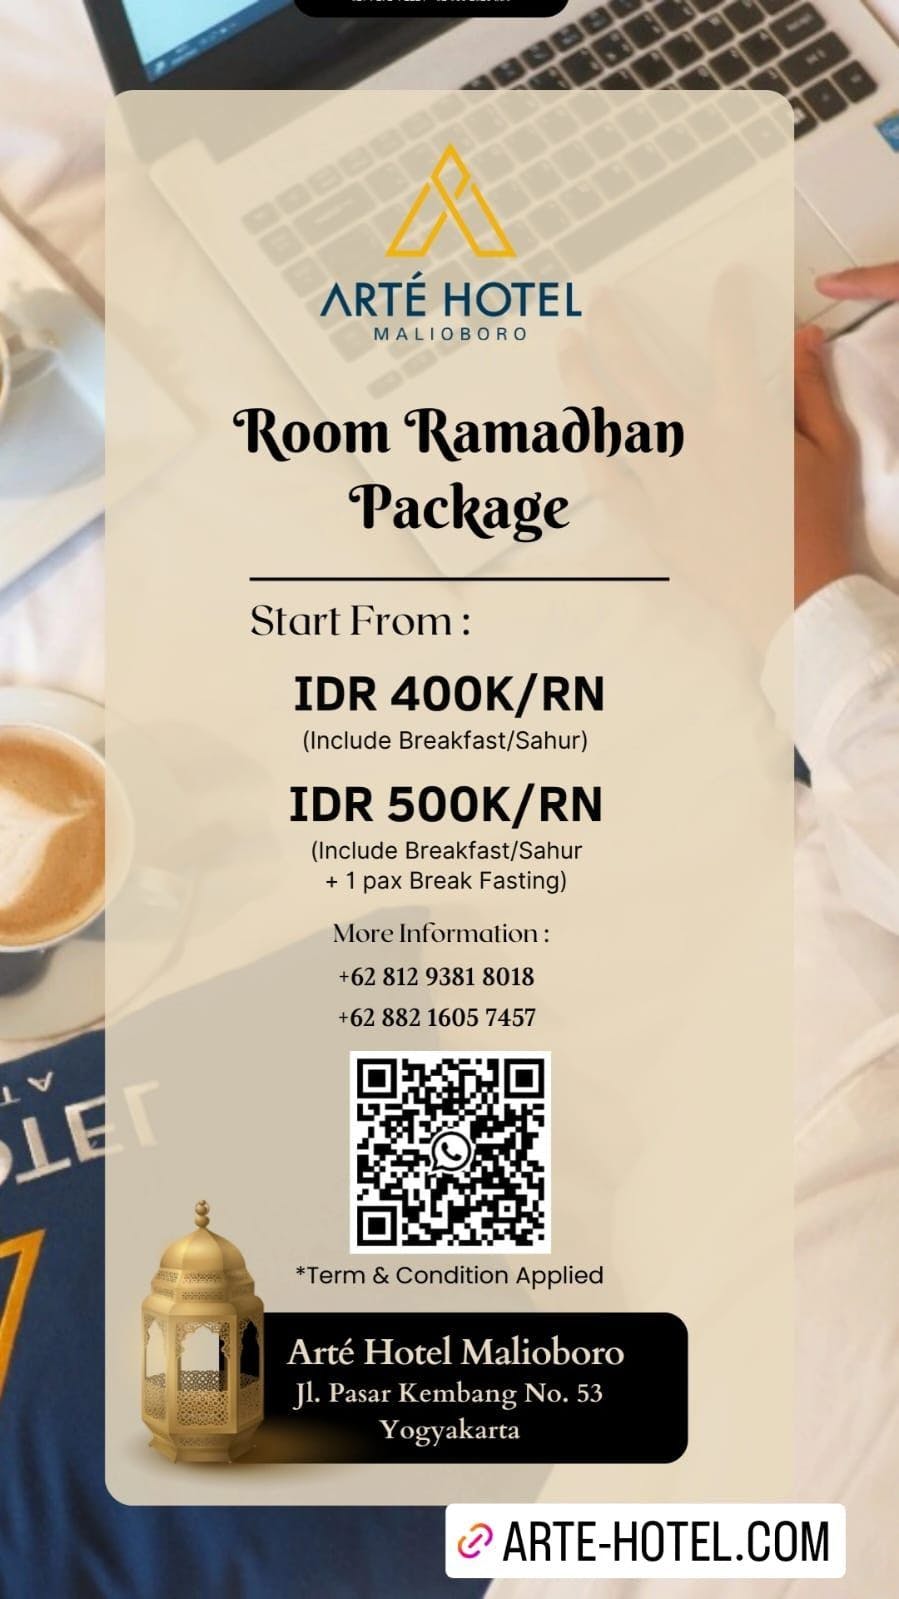 Room Ramadhan Package